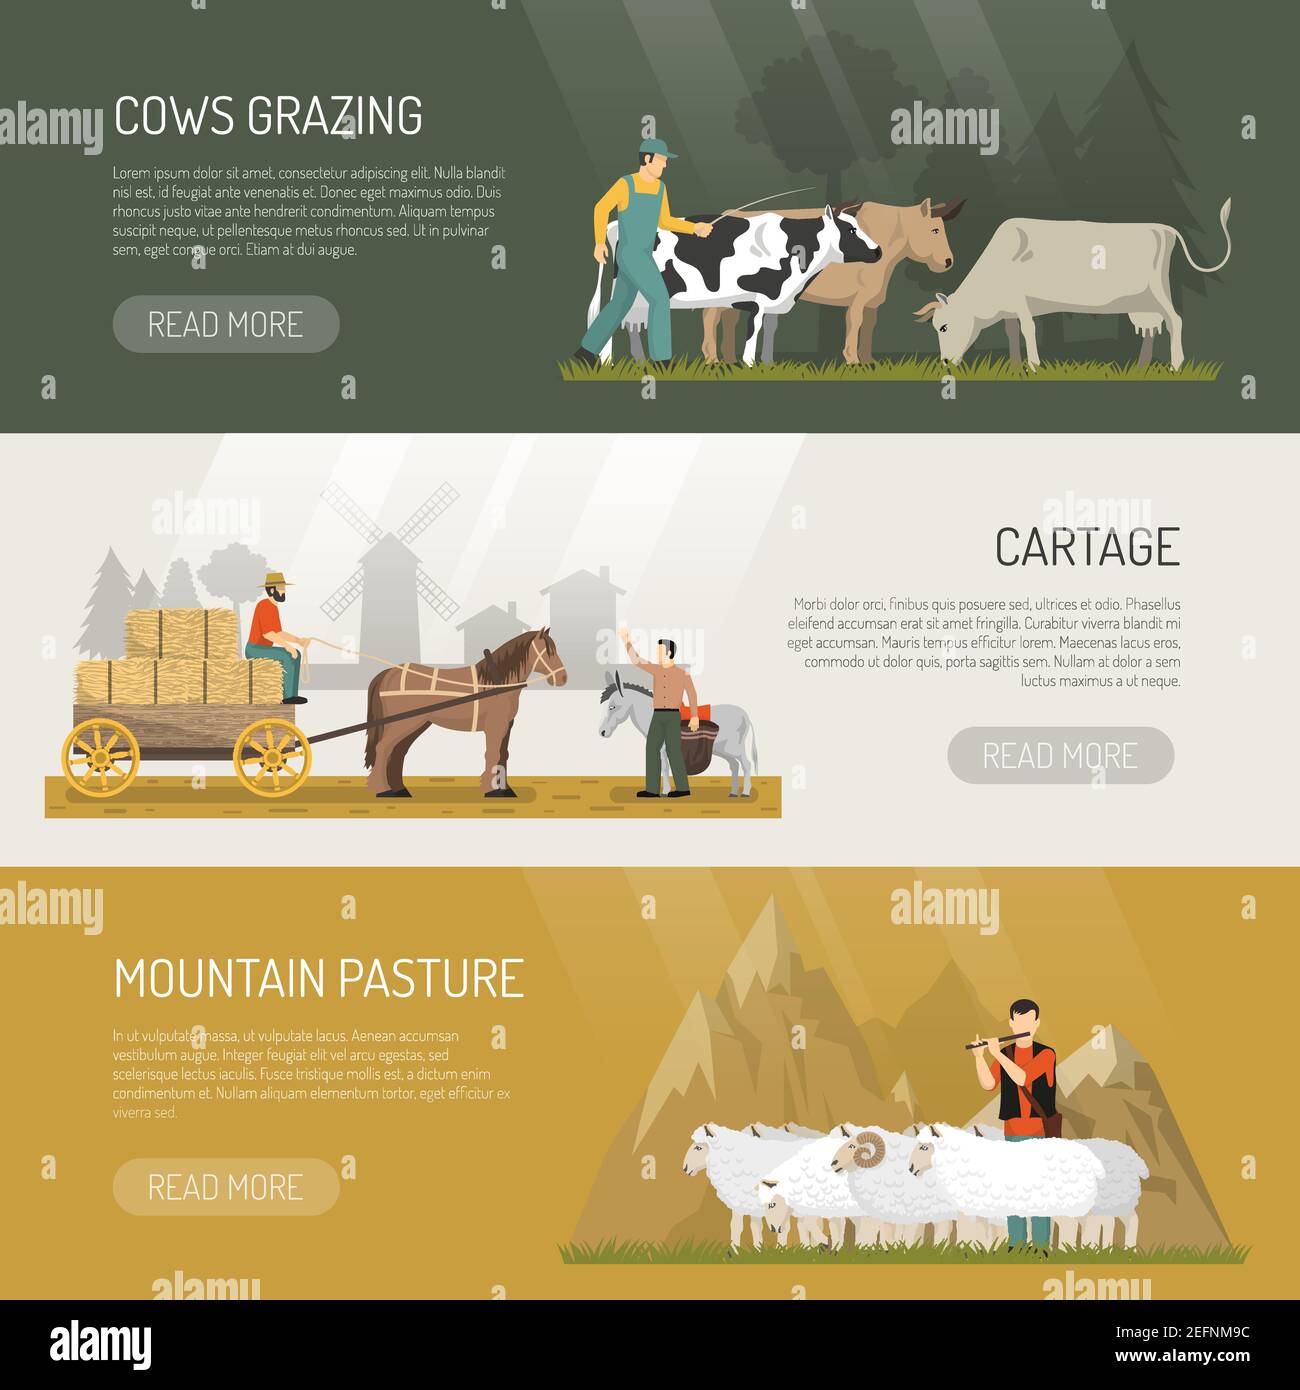 Bauernhof Tiere Banner mit grasenden Kühen Schafe Weide und Pferd Cartage Bilder mit mehr lesen Taste Vektor Illustration Stock Vektor